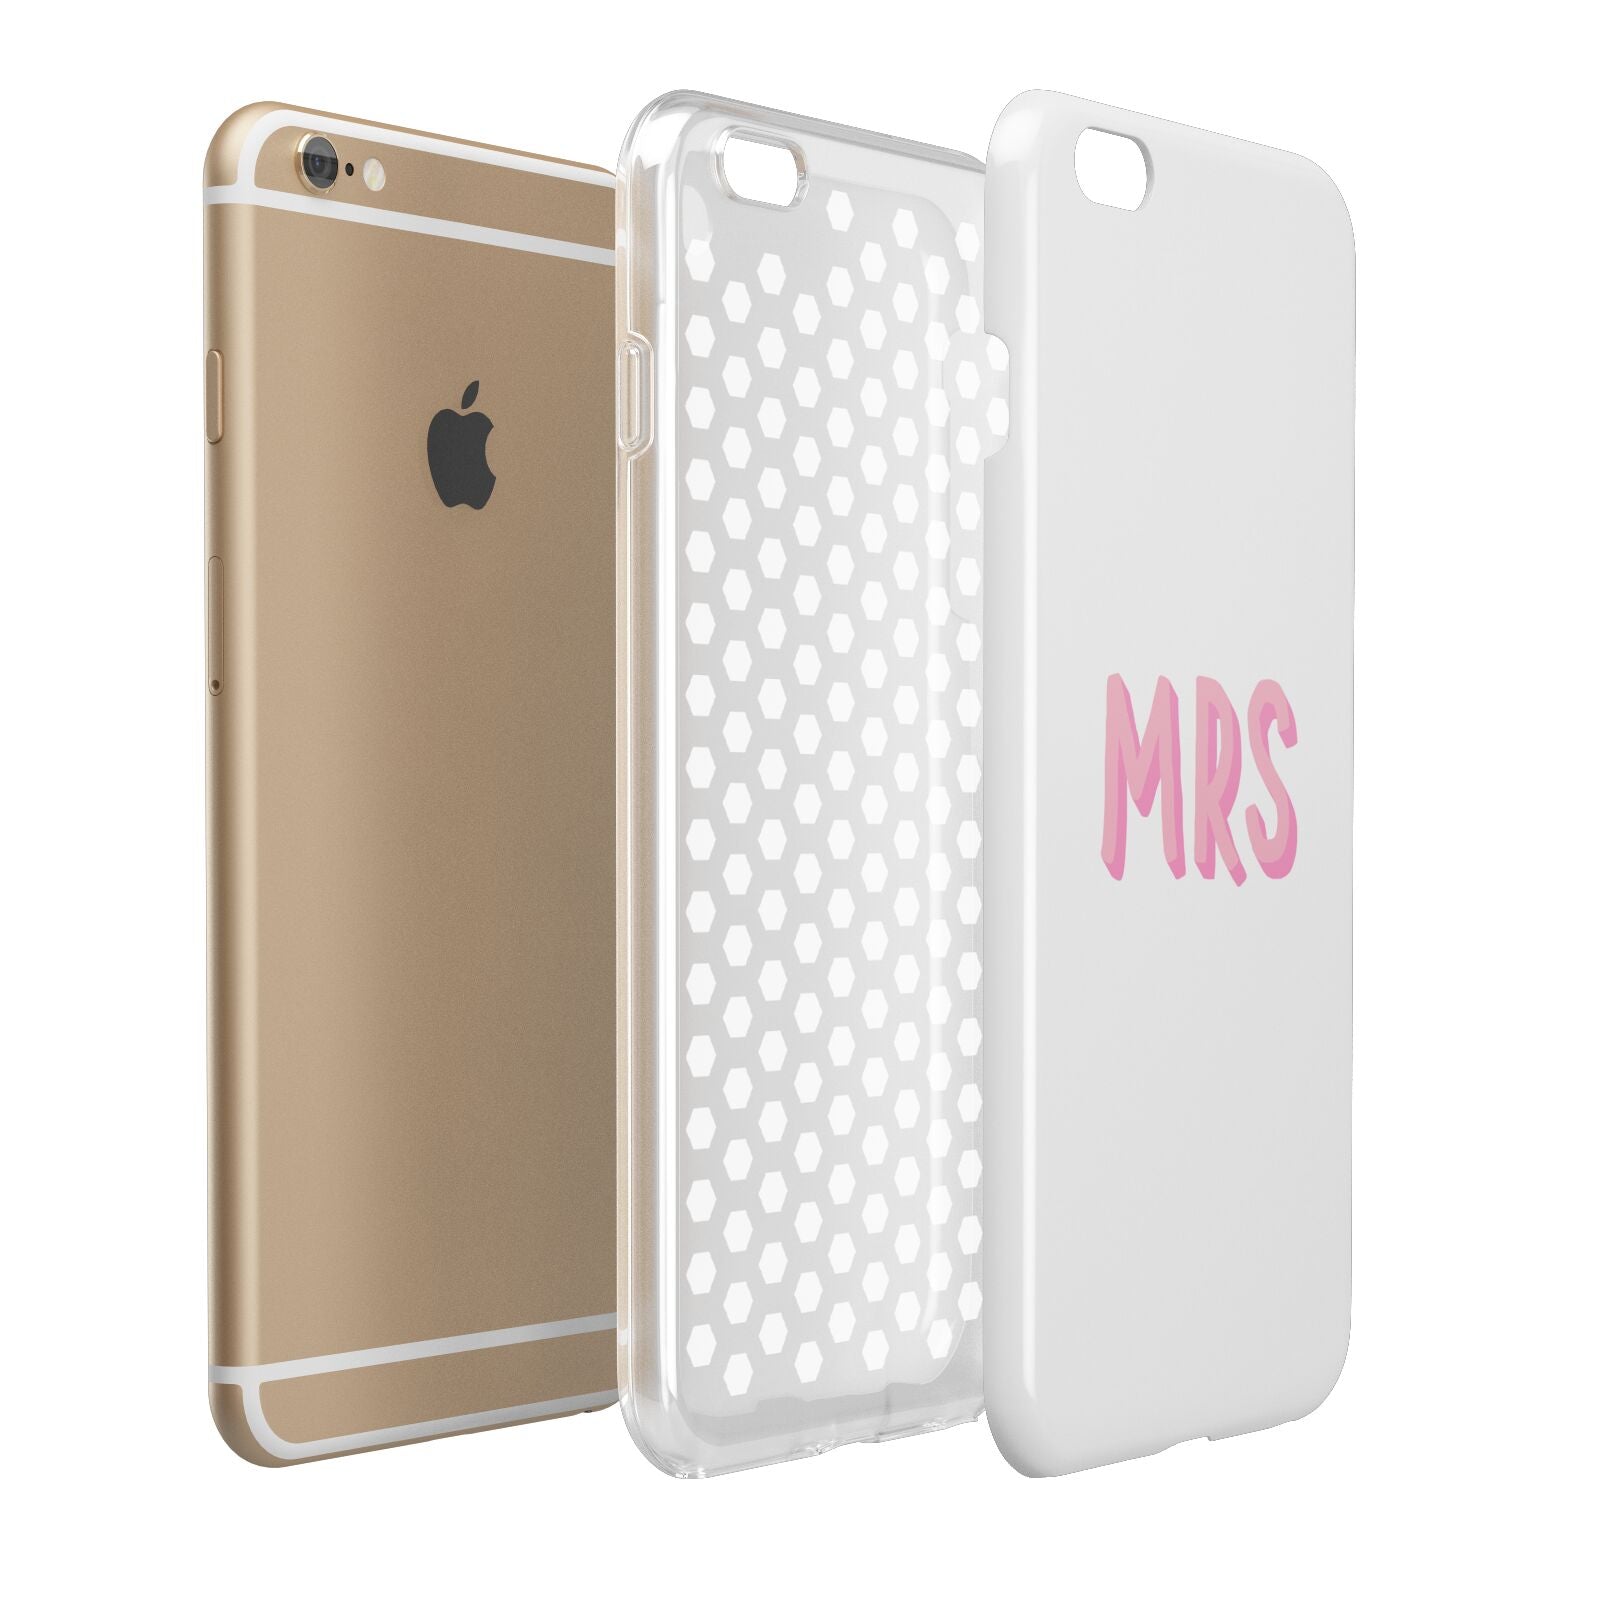 Mrs Apple iPhone 6 Plus 3D Tough Case Expand Detail Image